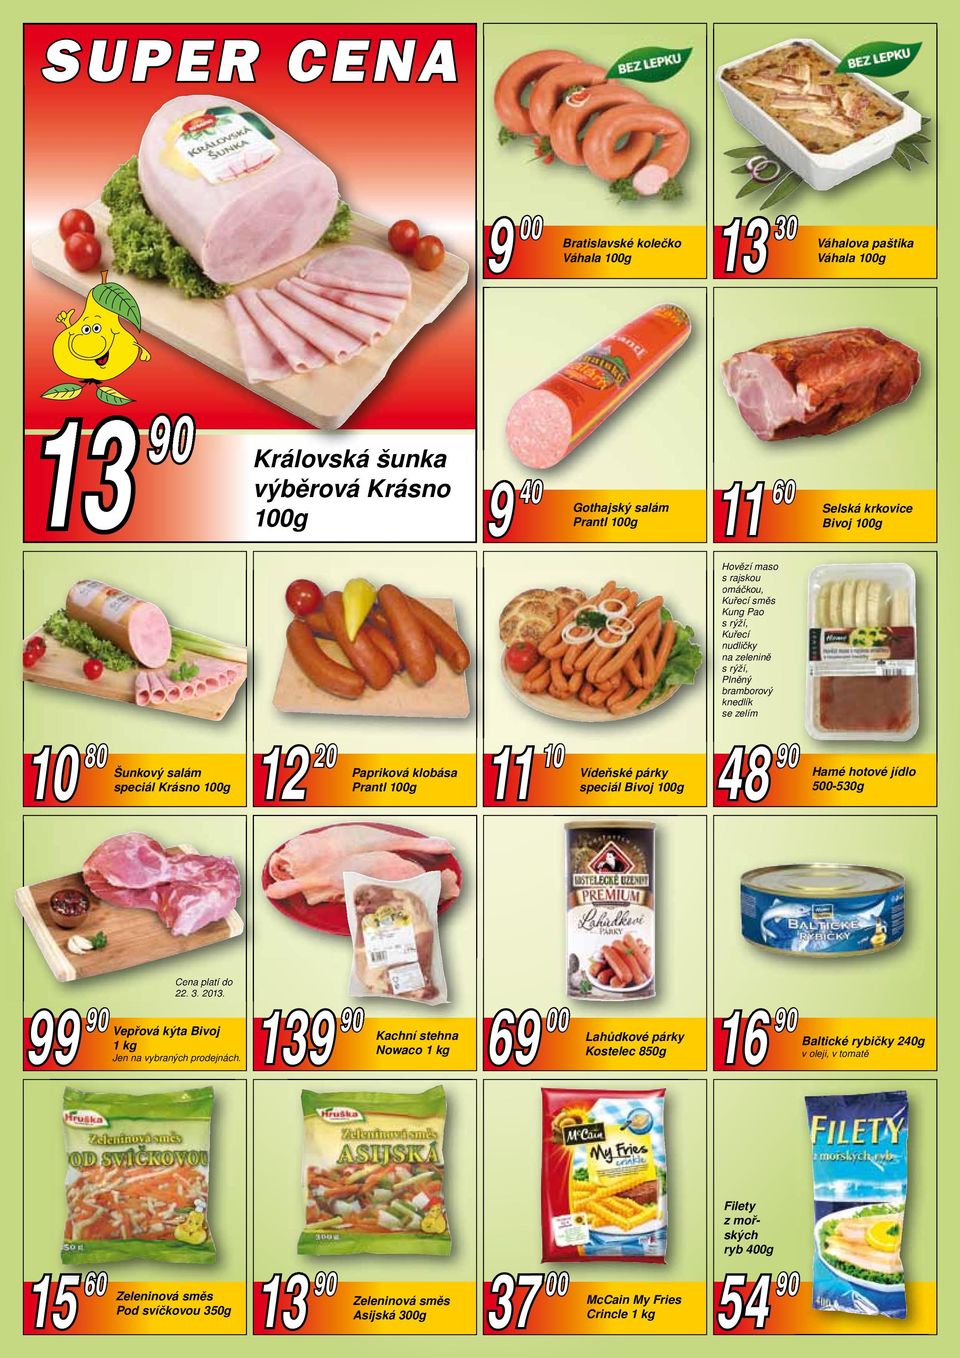 11 10 Vídeňské párky speciál Bivoj 100g 48 90 Hamé hotové jídlo 500-530g Cena platí do 22. 3. 2013. 9 Vepřová kýta Bivoj 1 kg Jen na vybraných prodejnách.